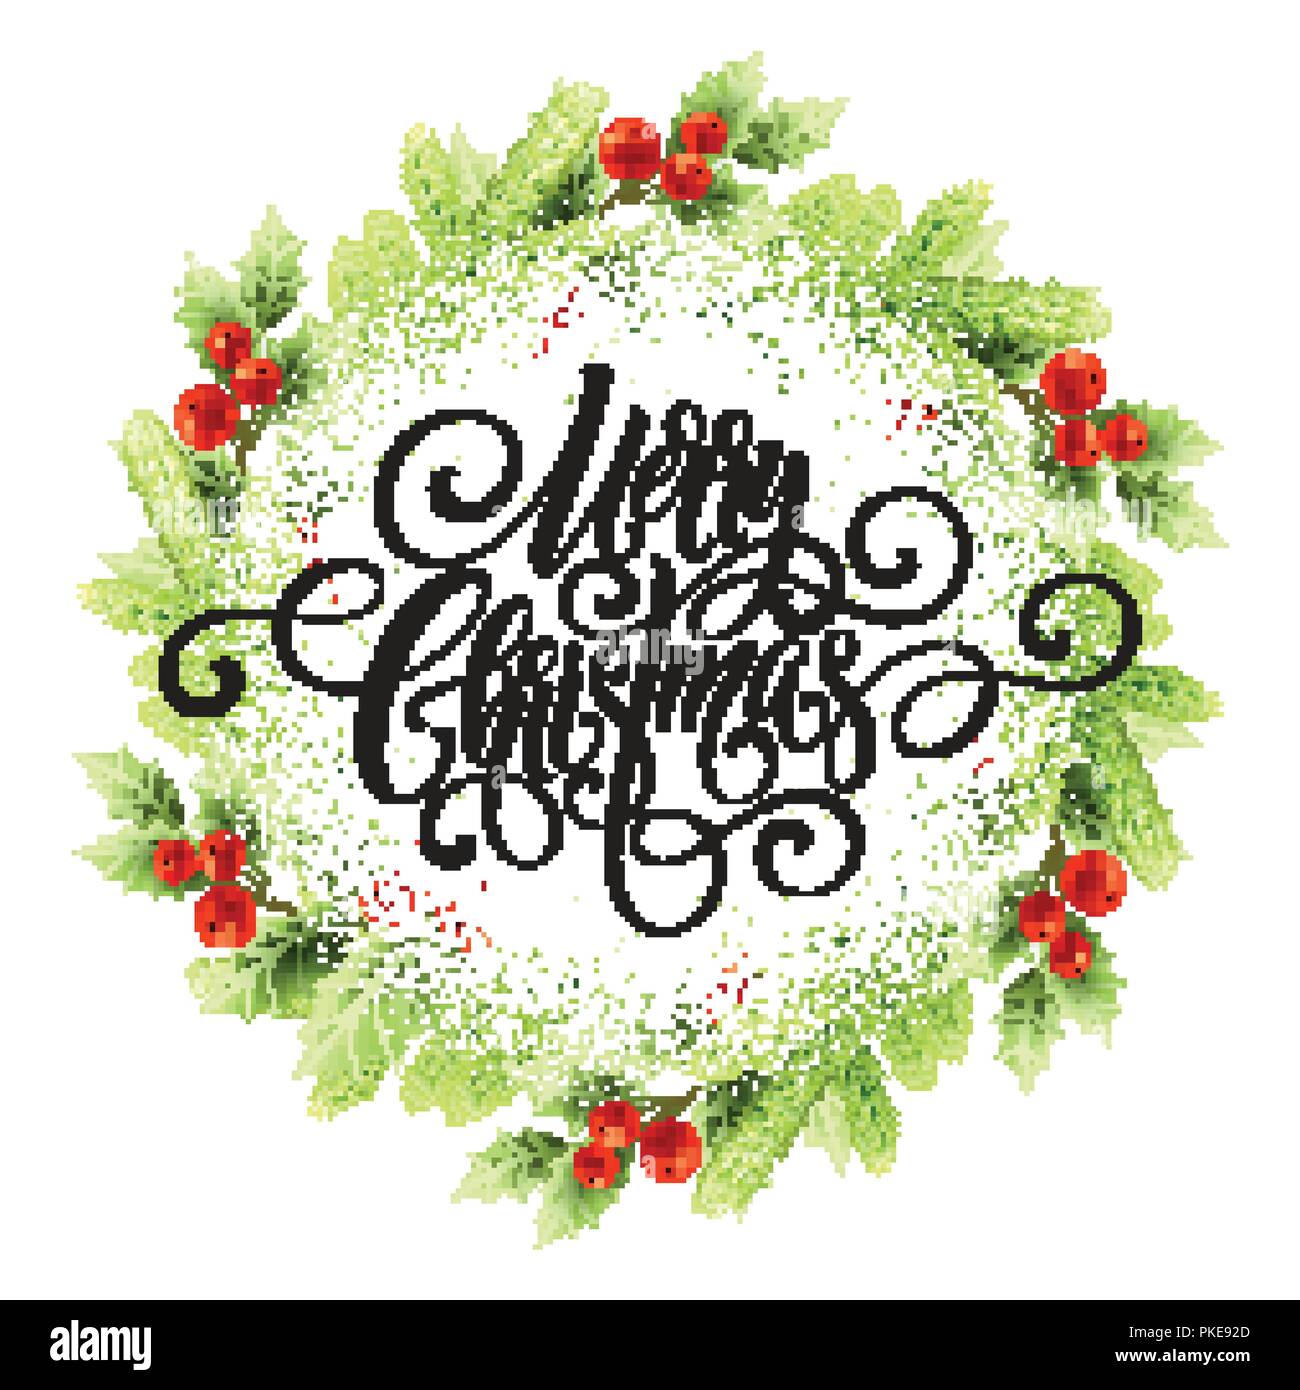 Merry Christmas lettering in mistletoe wreath Stock Vector